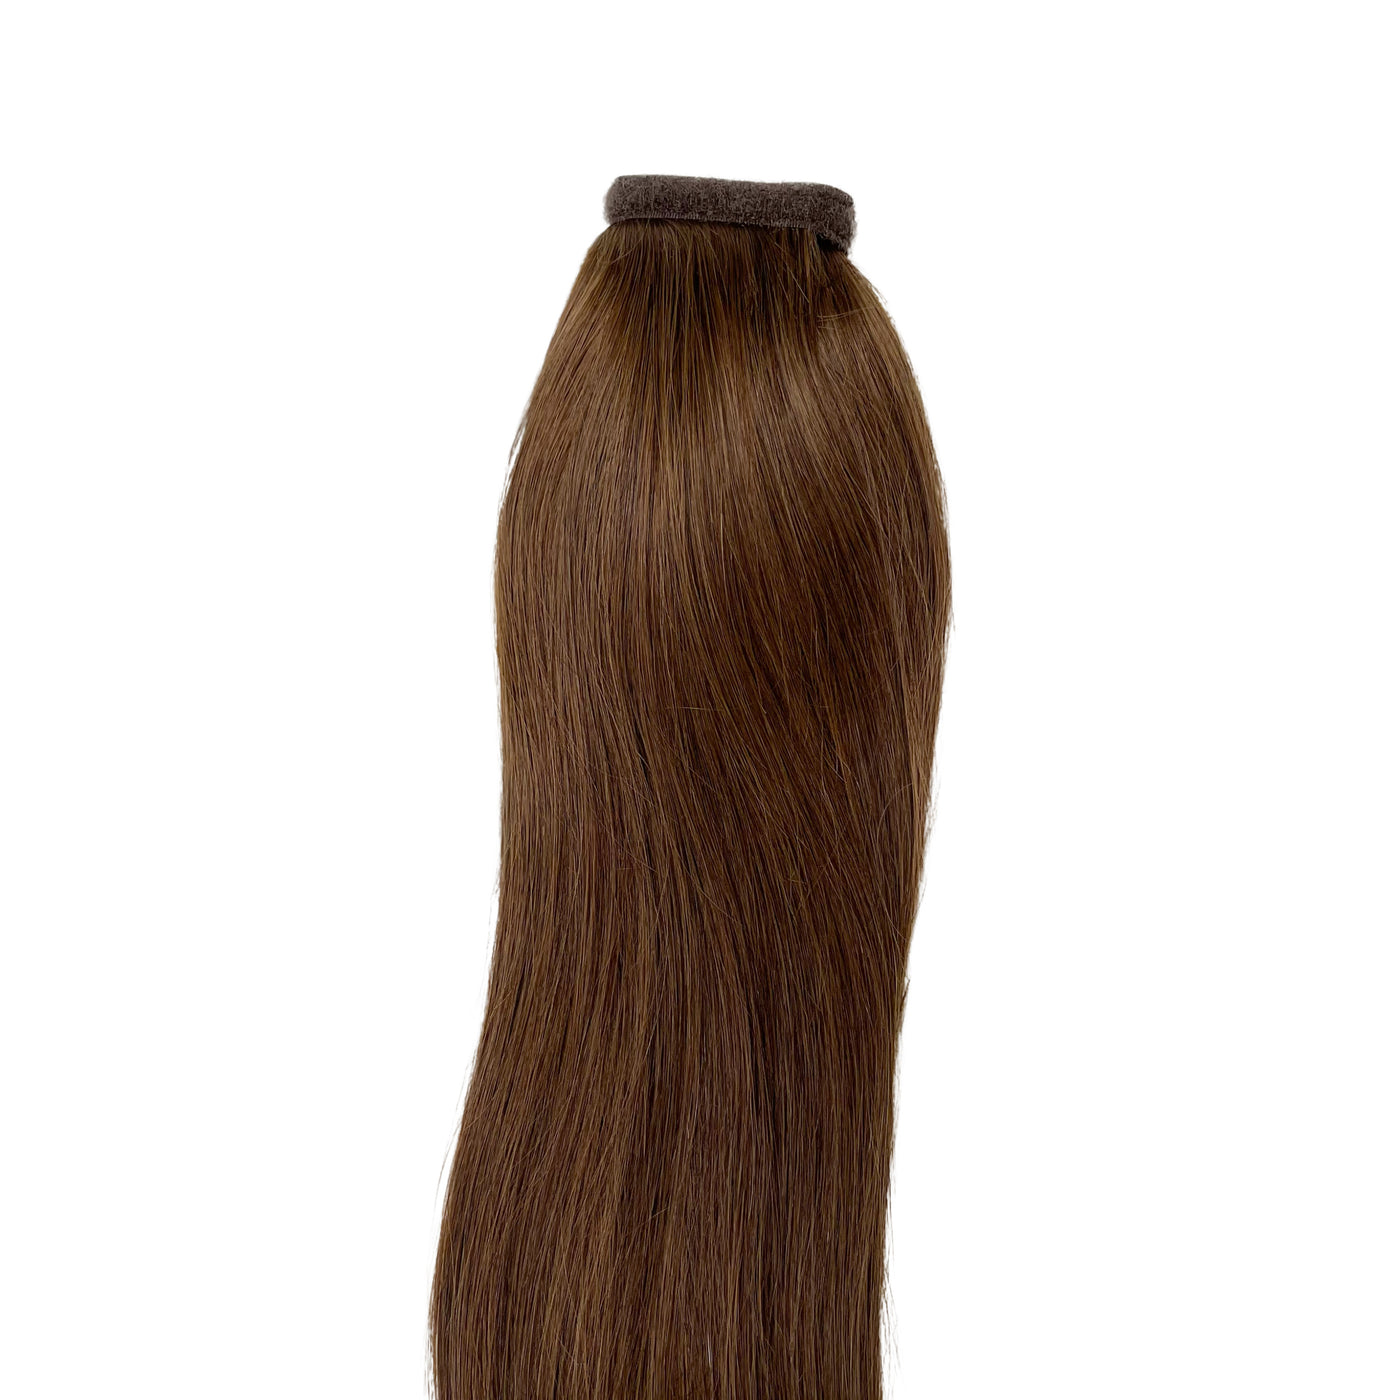 brown human hair ponytail